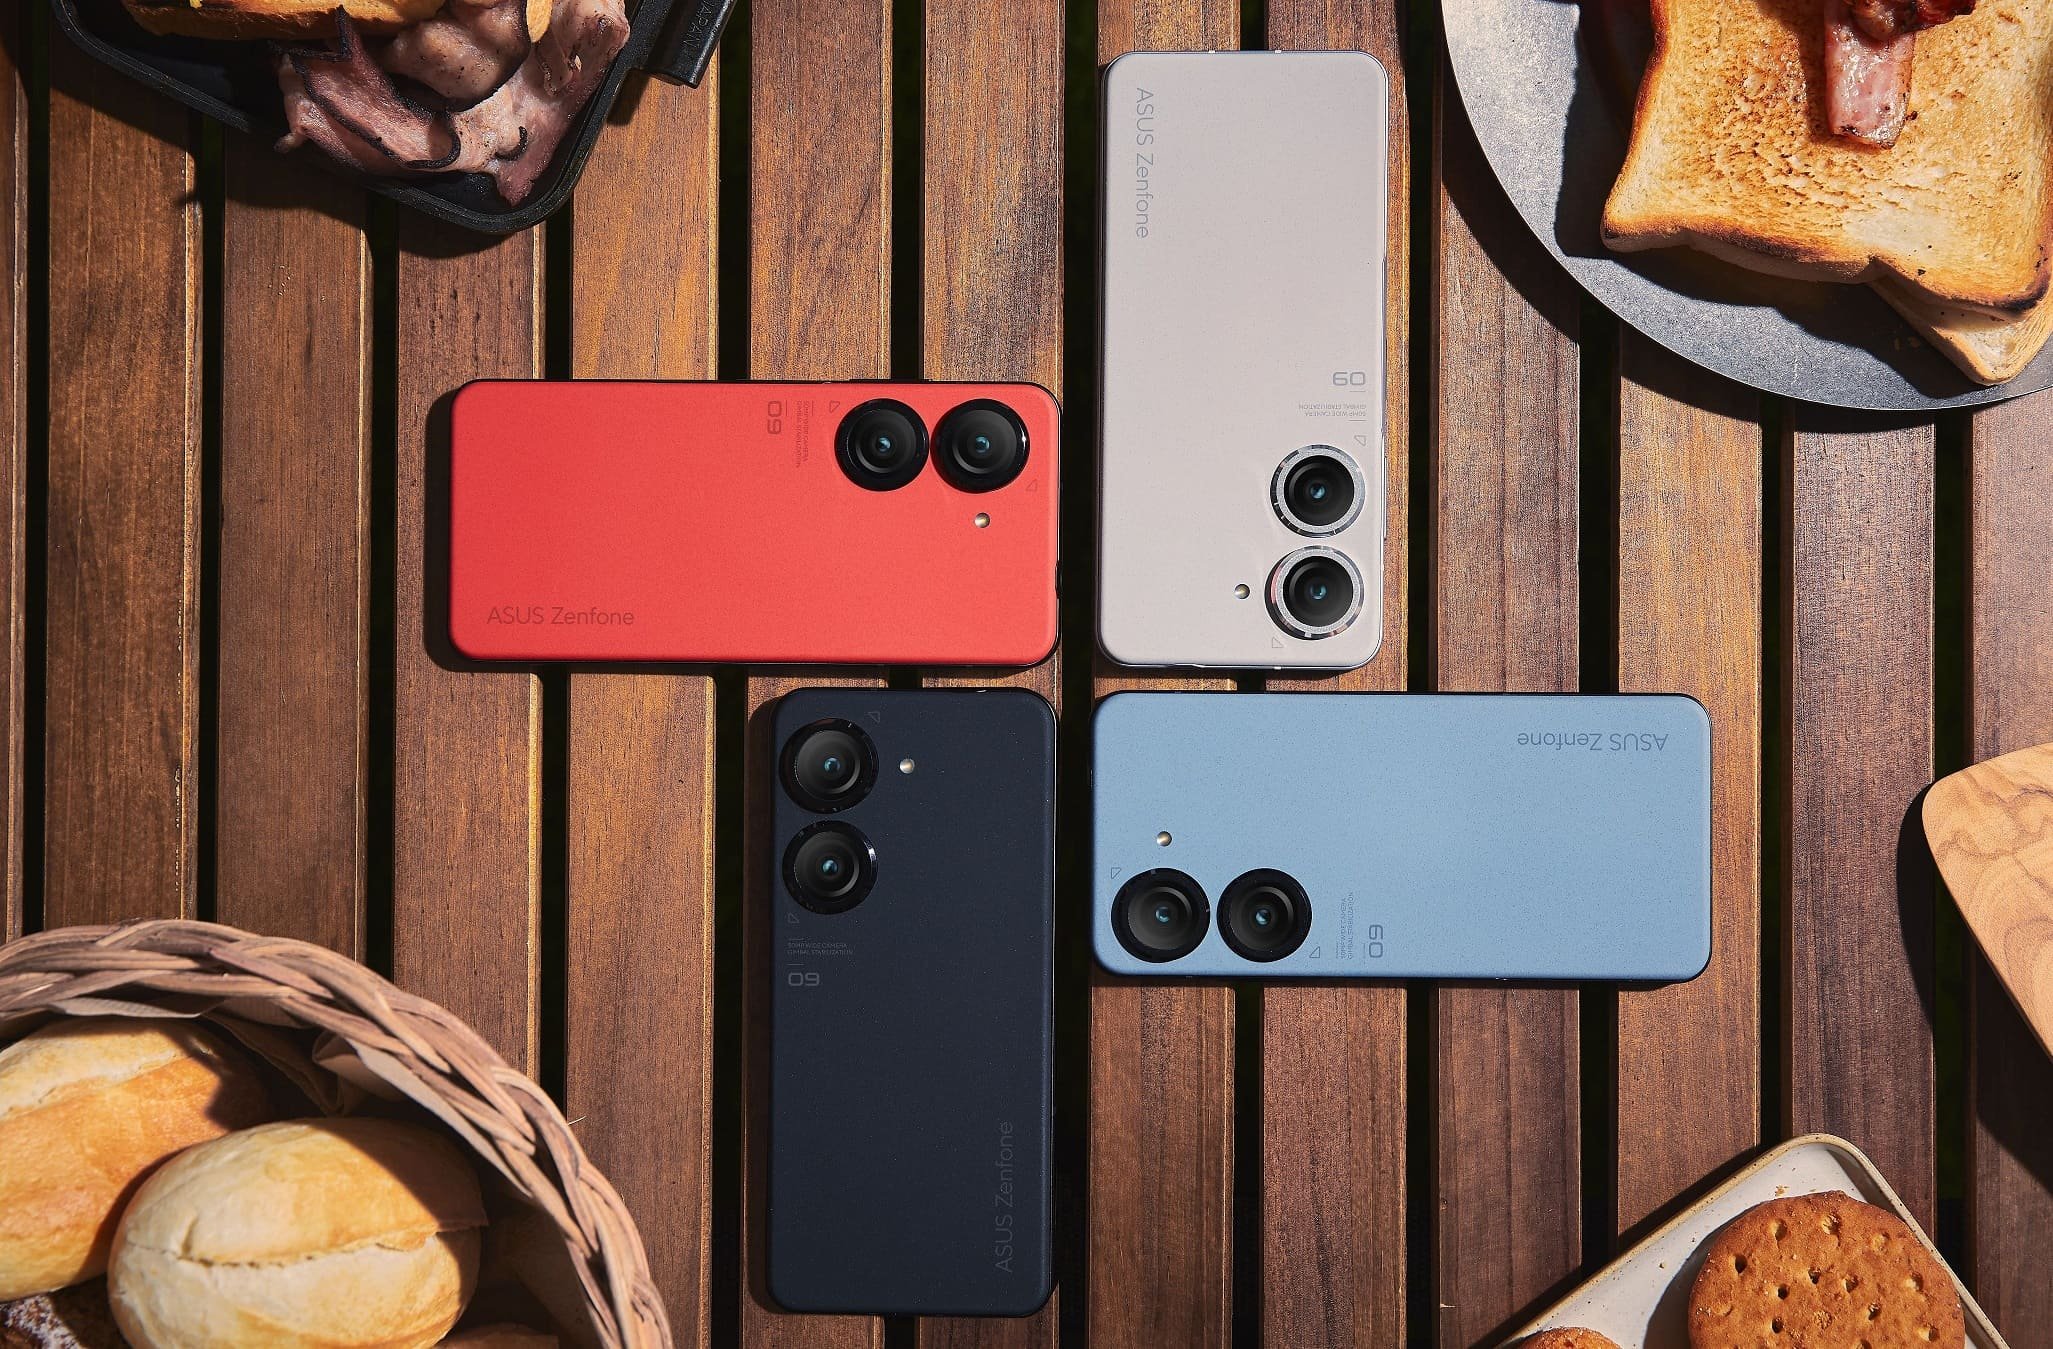 O Zenfone 9 está disponível em 4 cores diferentes